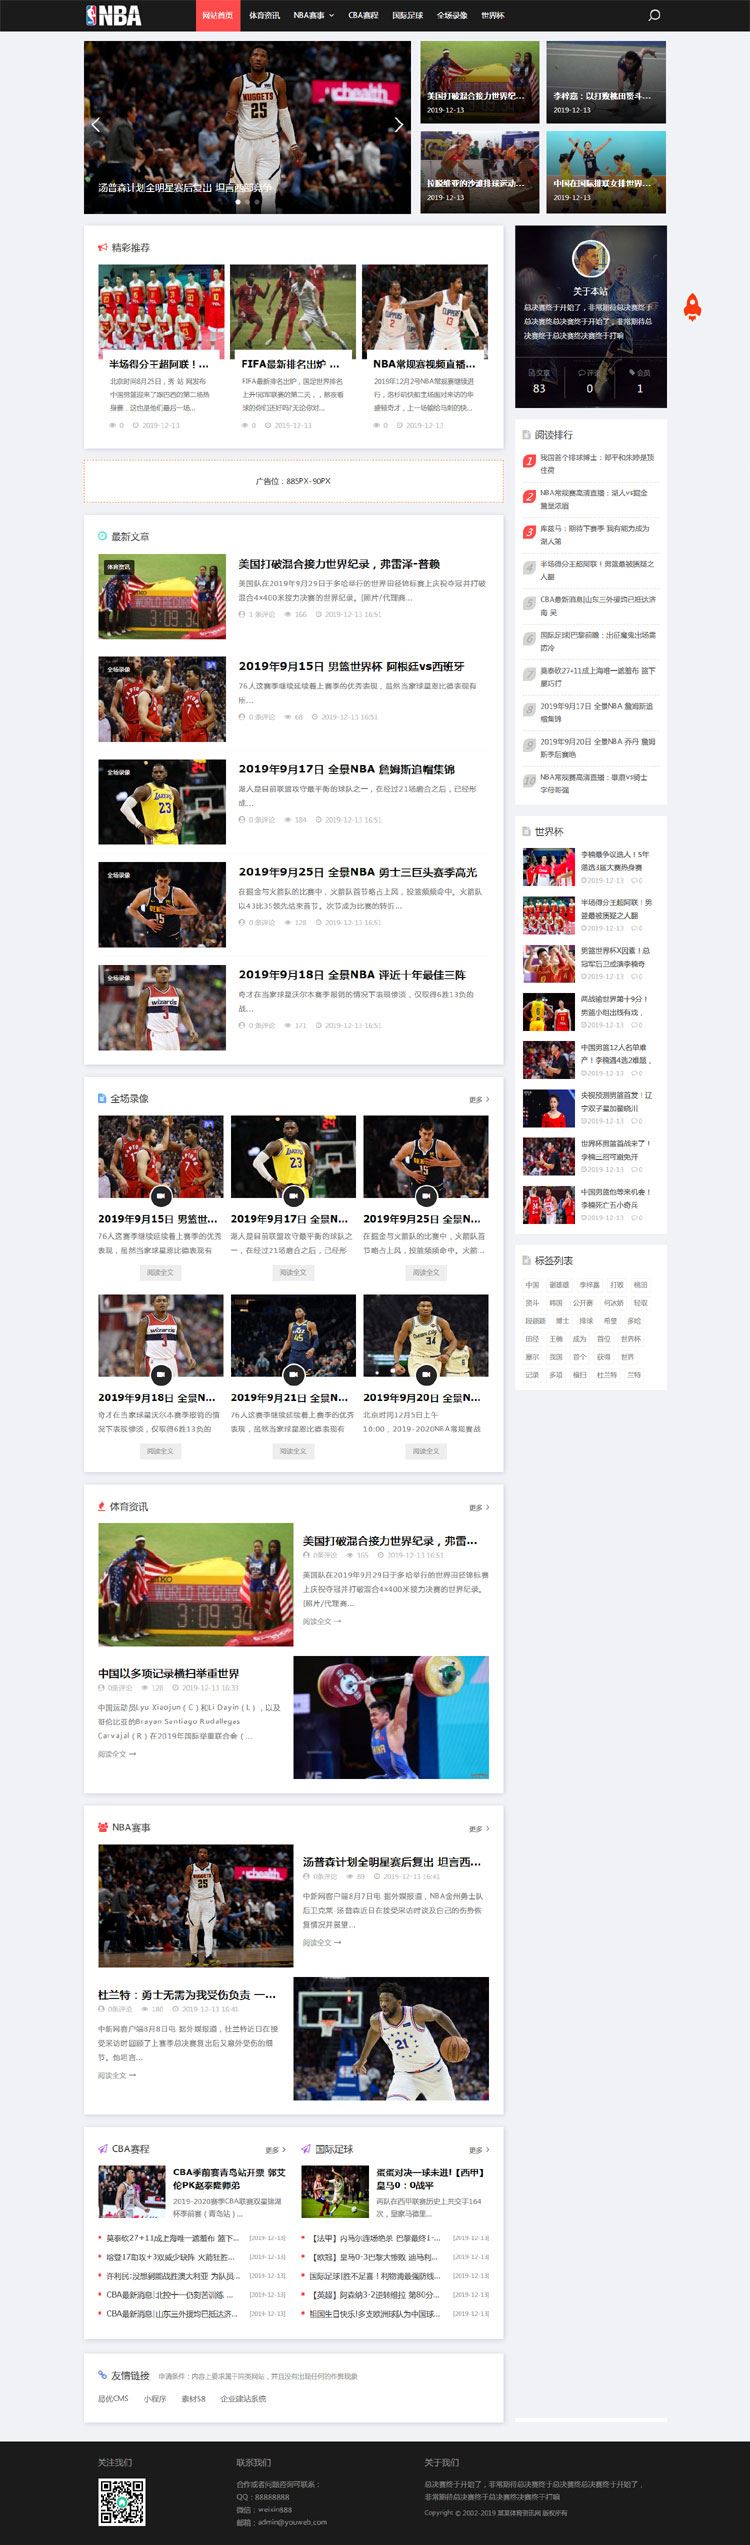 织梦dedecms模板响应式NBA体育赛事新闻资讯网站源码 (自适应手机移动端)